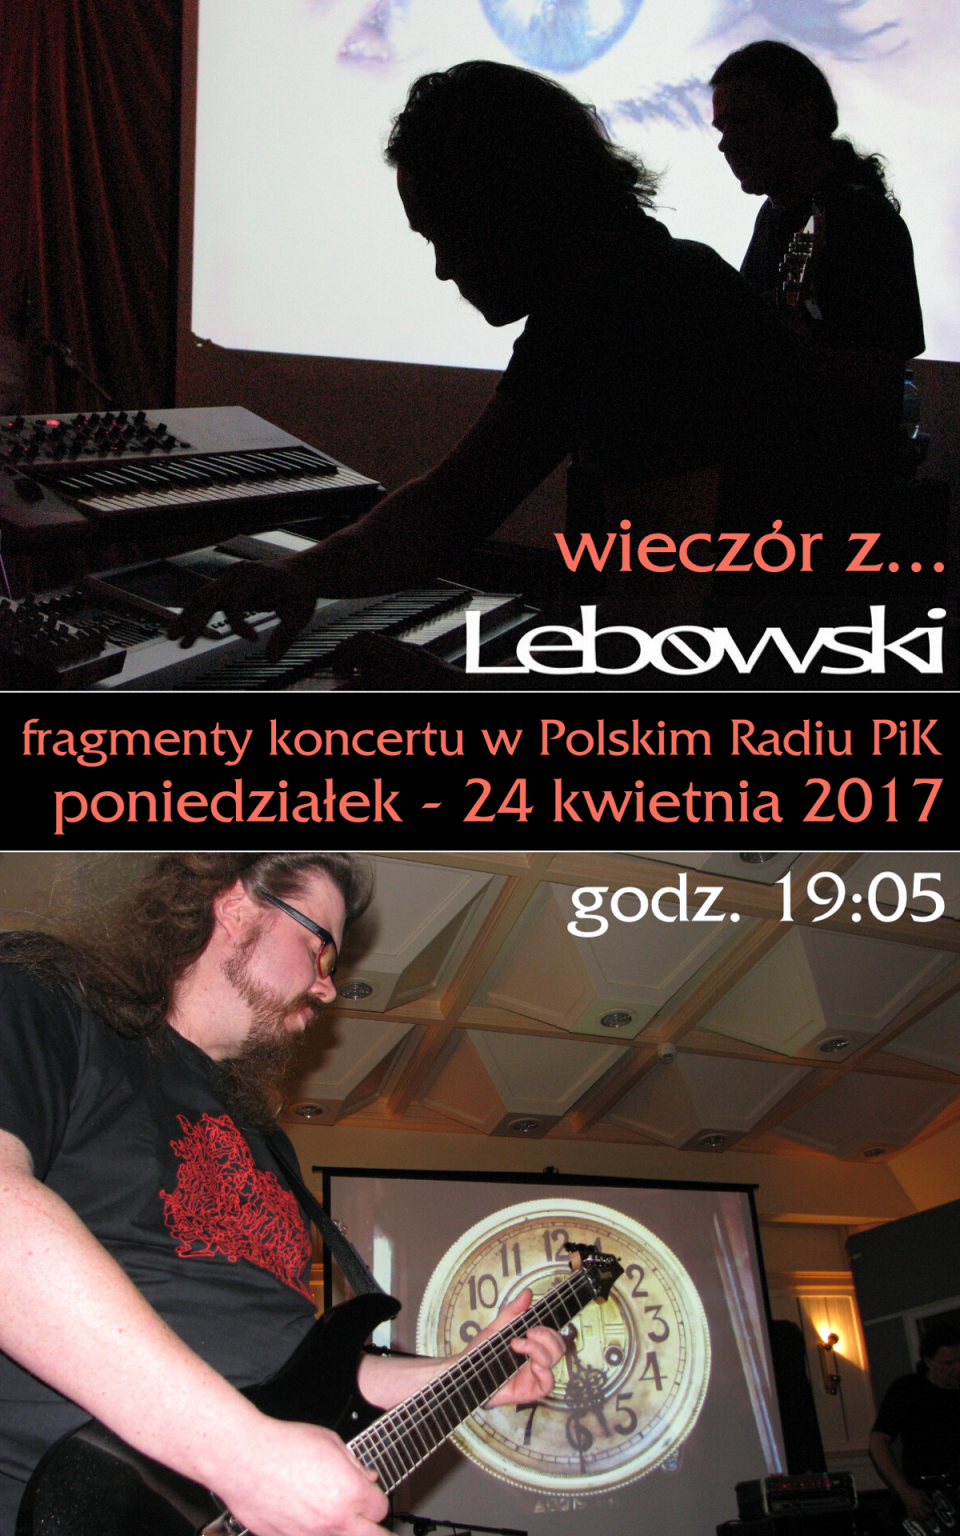 Wspomnienie występu grupy LEBOWSKI w Polskim Radiu PiK, 9 września 2011 r. Fot. Adam Droździk